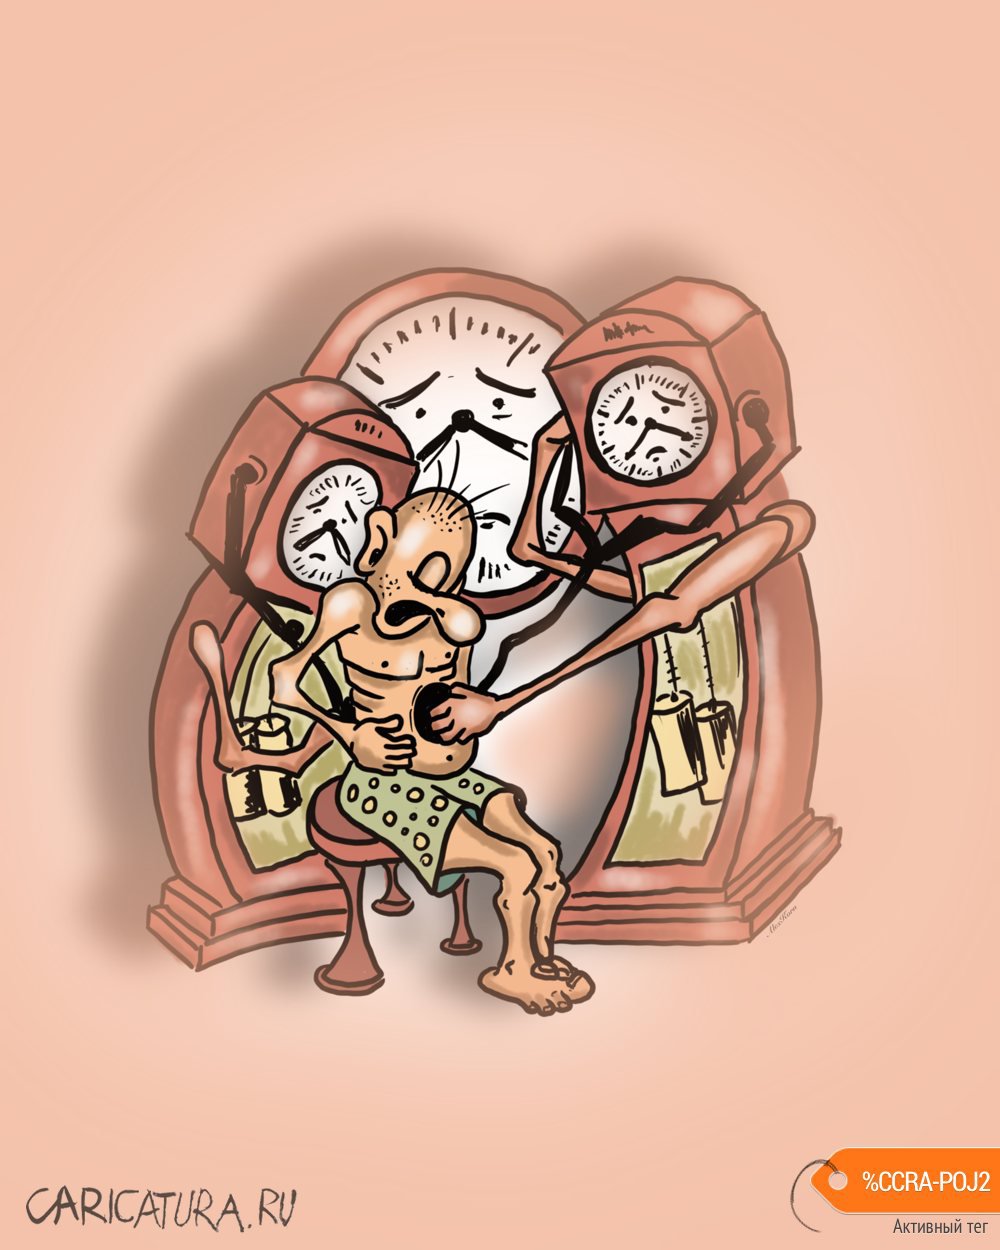 Карикатура "Время лечит", Алексей Корякин